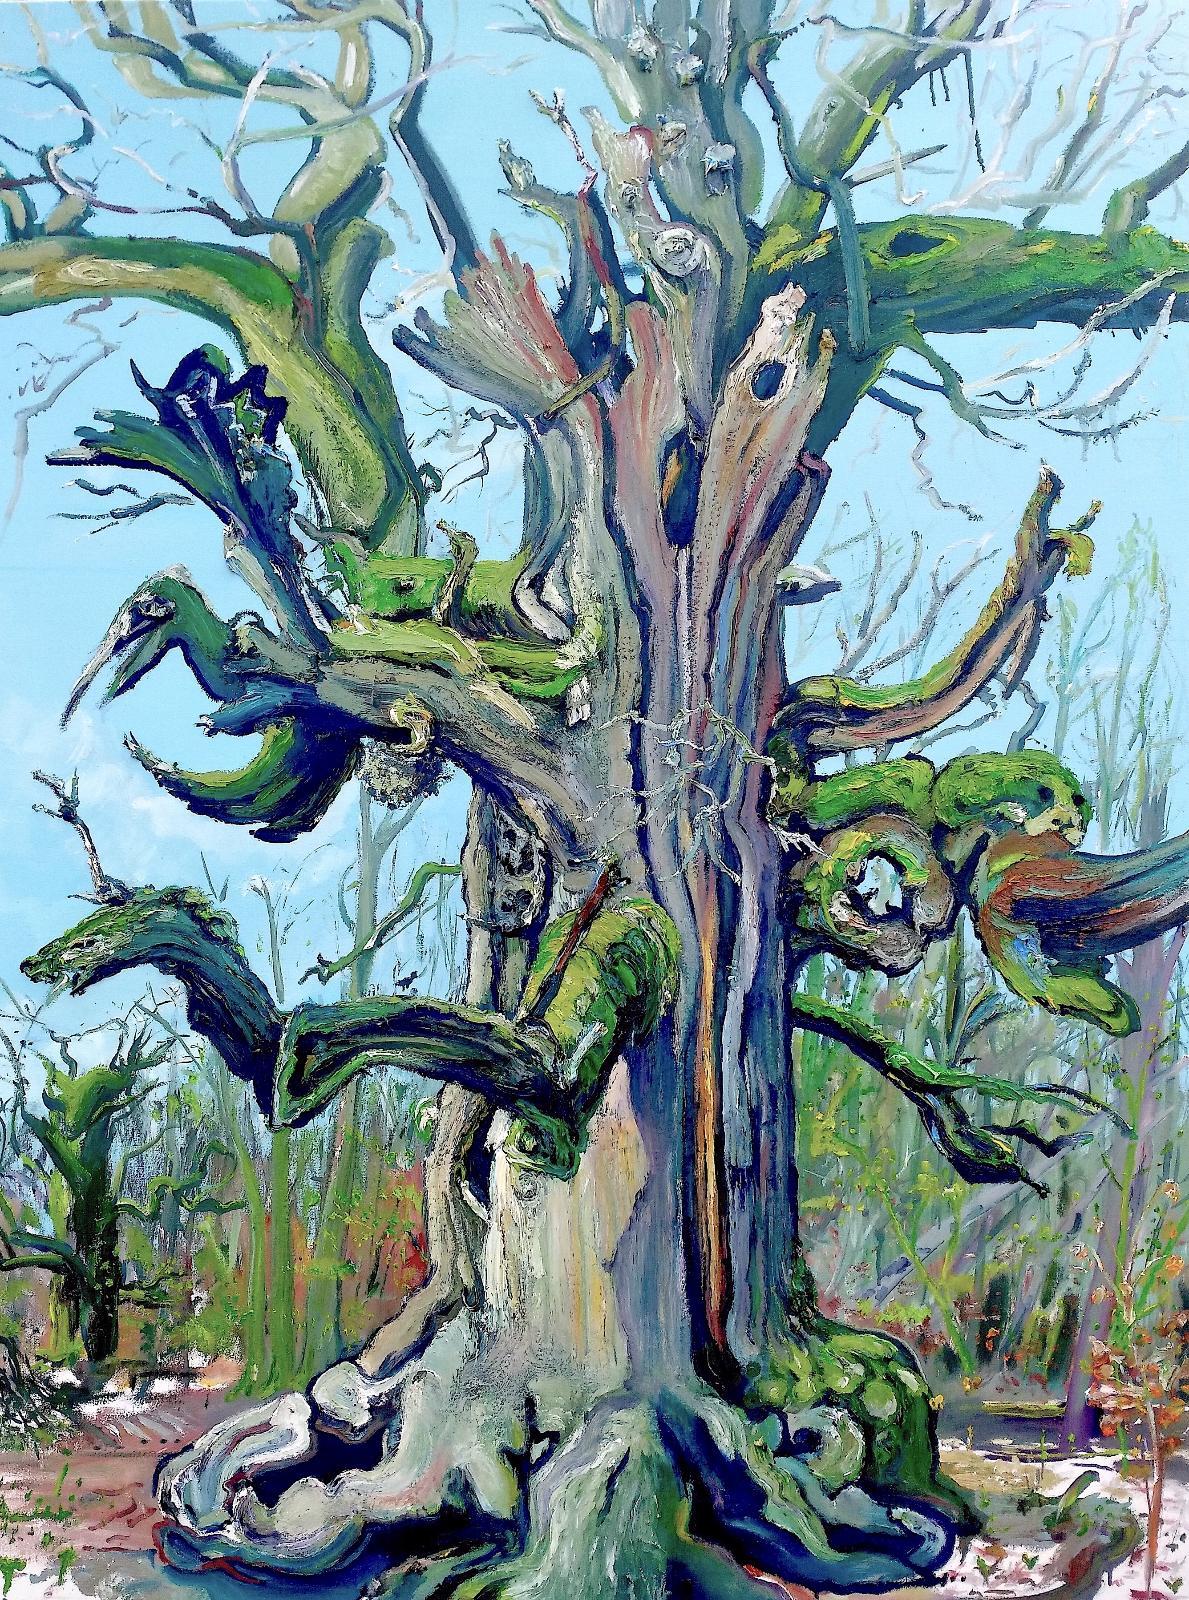 Saxana, Baumporträt der Kamin Eiche, plein air 2019, Öl auf Leinwand, 160 x 120 cm